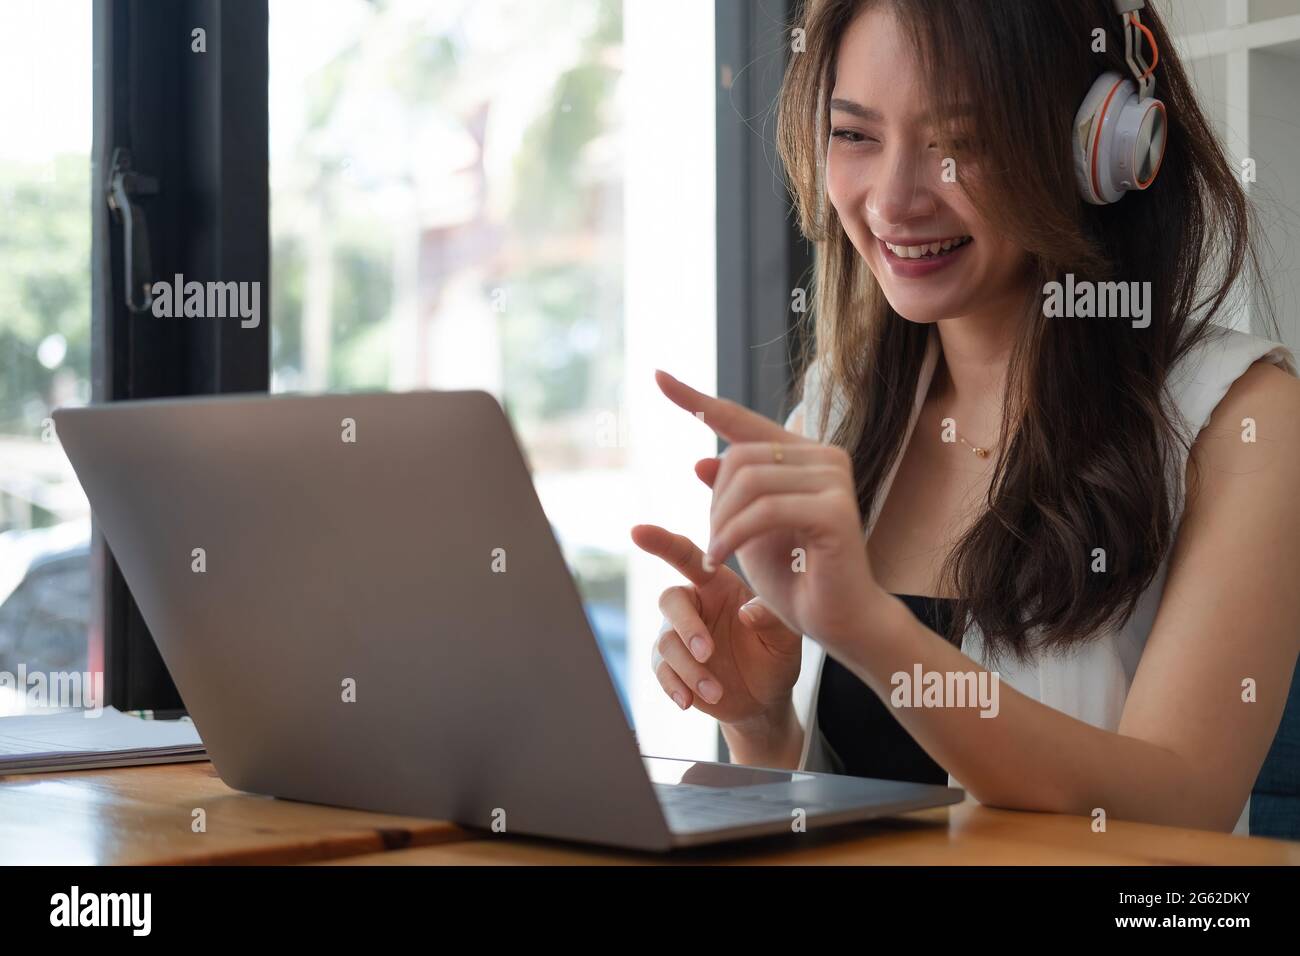 Prise de vue d'une femme d'affaires asiatique heureuse portant un micro-casque/oreillette en ligne vidéoconférence sur ordinateur portable avec son équipe d'affaires pendant la quarantaine Covid-19 Banque D'Images